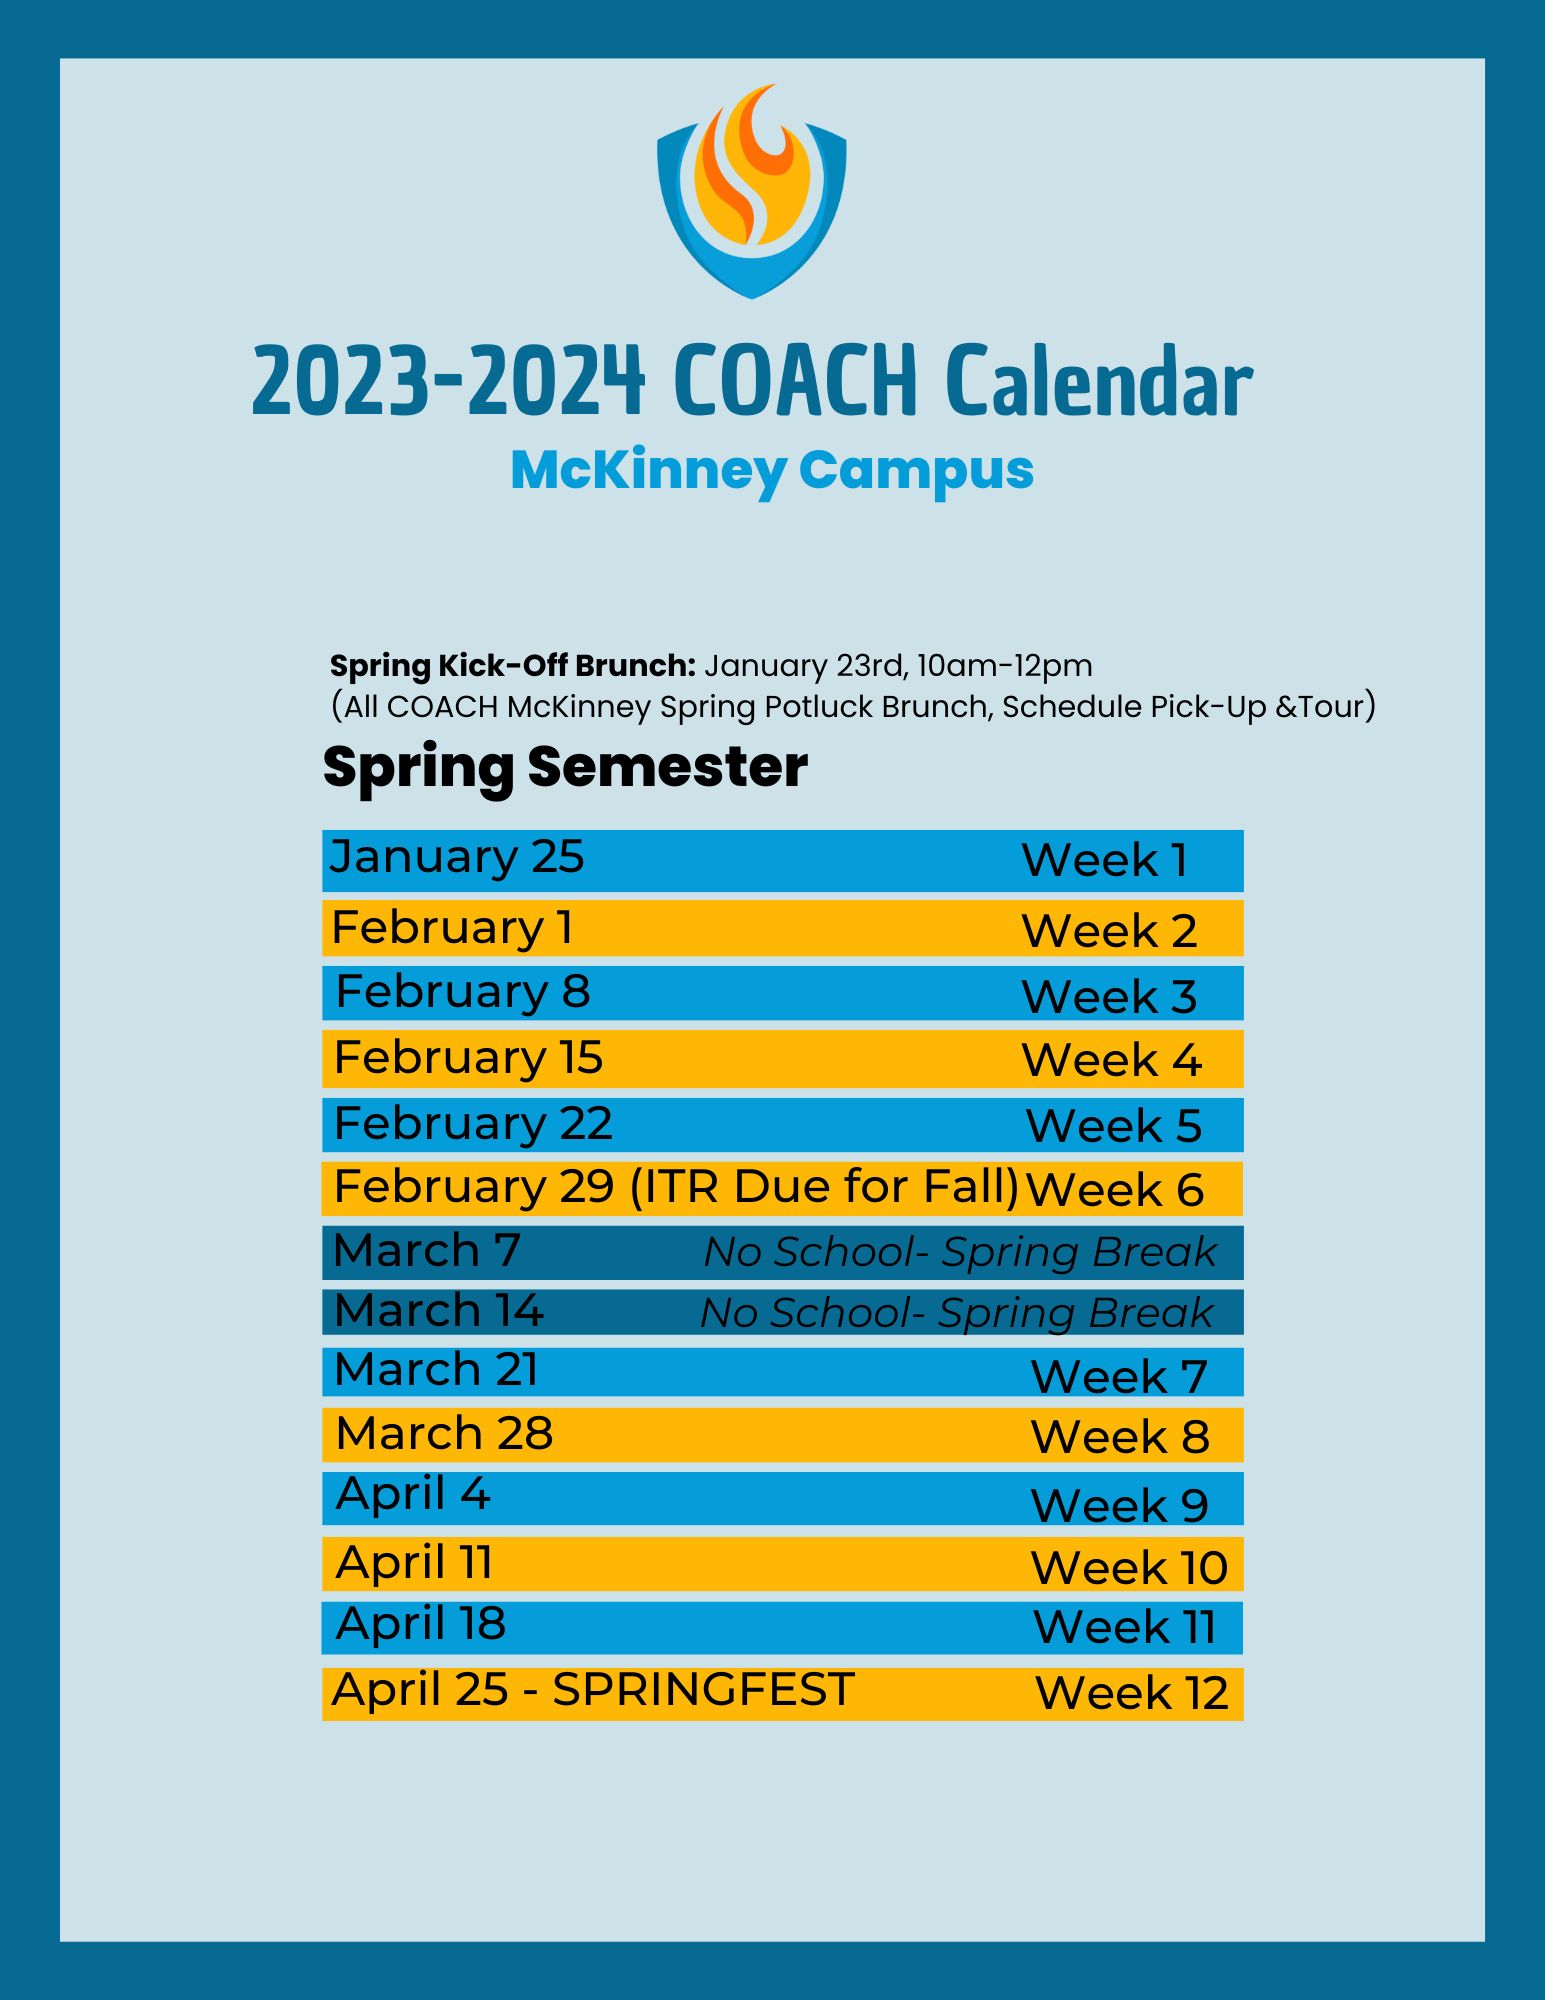 COACH McKinney Spring 2023-2024